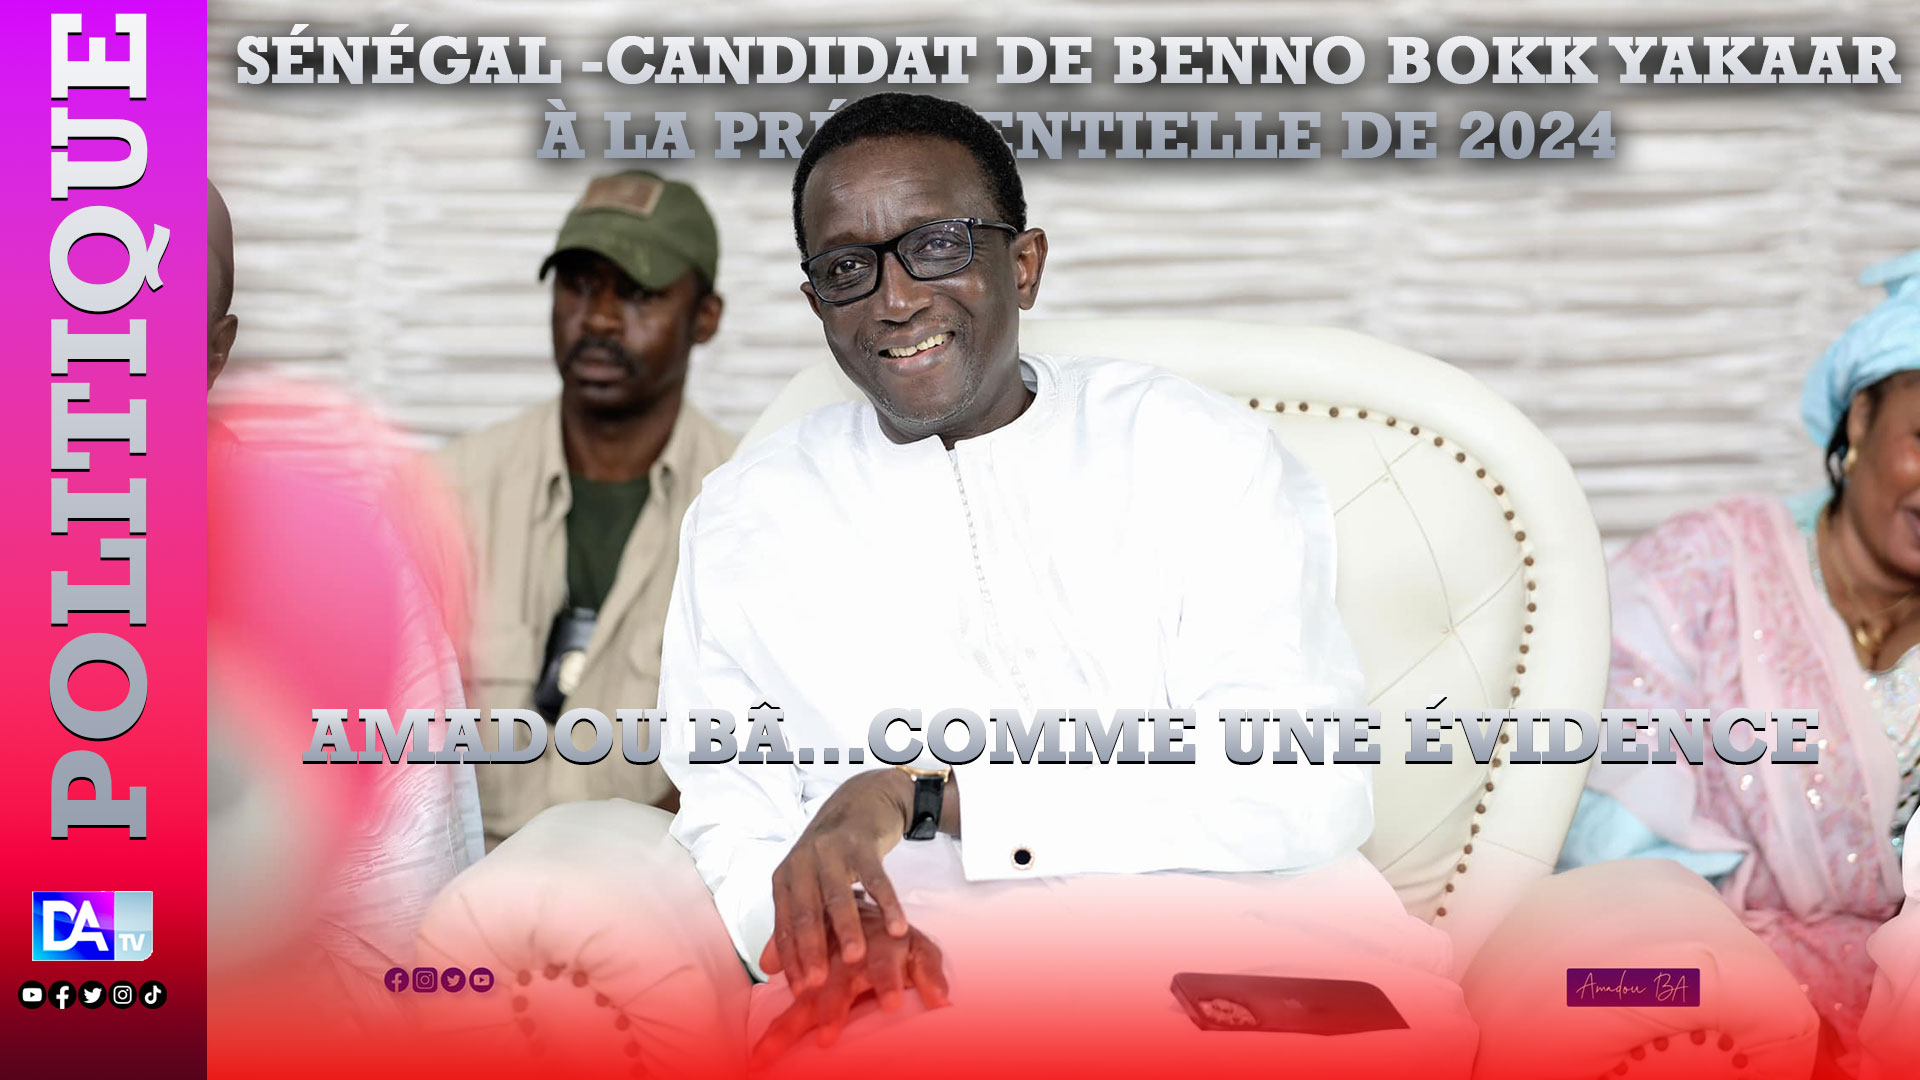 Sénégal -Candidat de Benno Bokk Yakaar à la présidentielle de 2024 : Amadou Bâ…comme une évidence